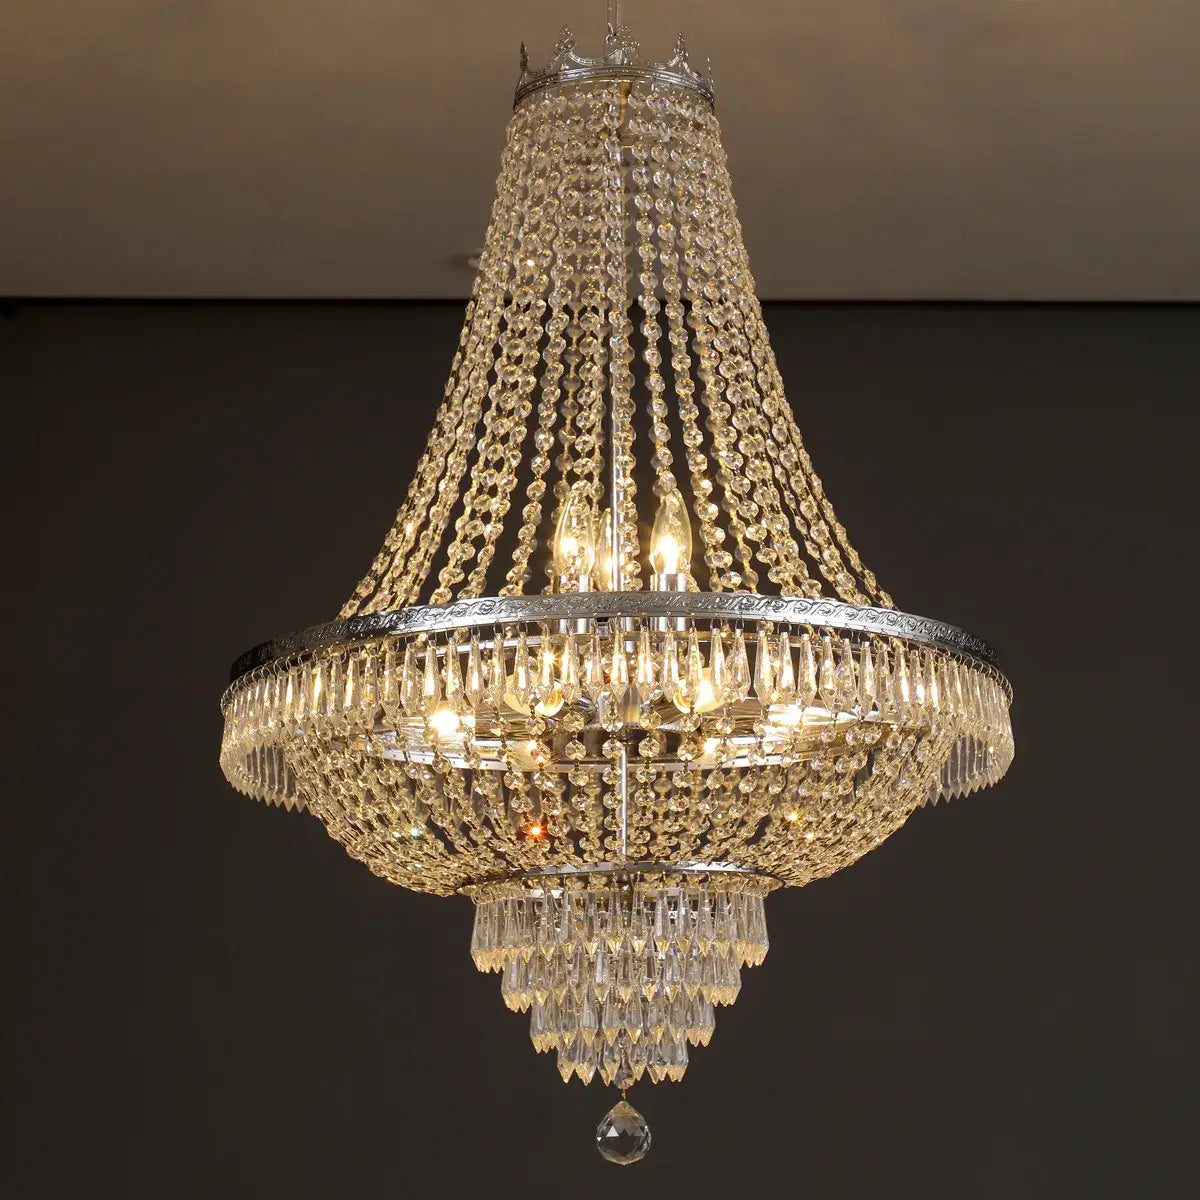 European-Style Luxury LED Crystal Pendant Light -